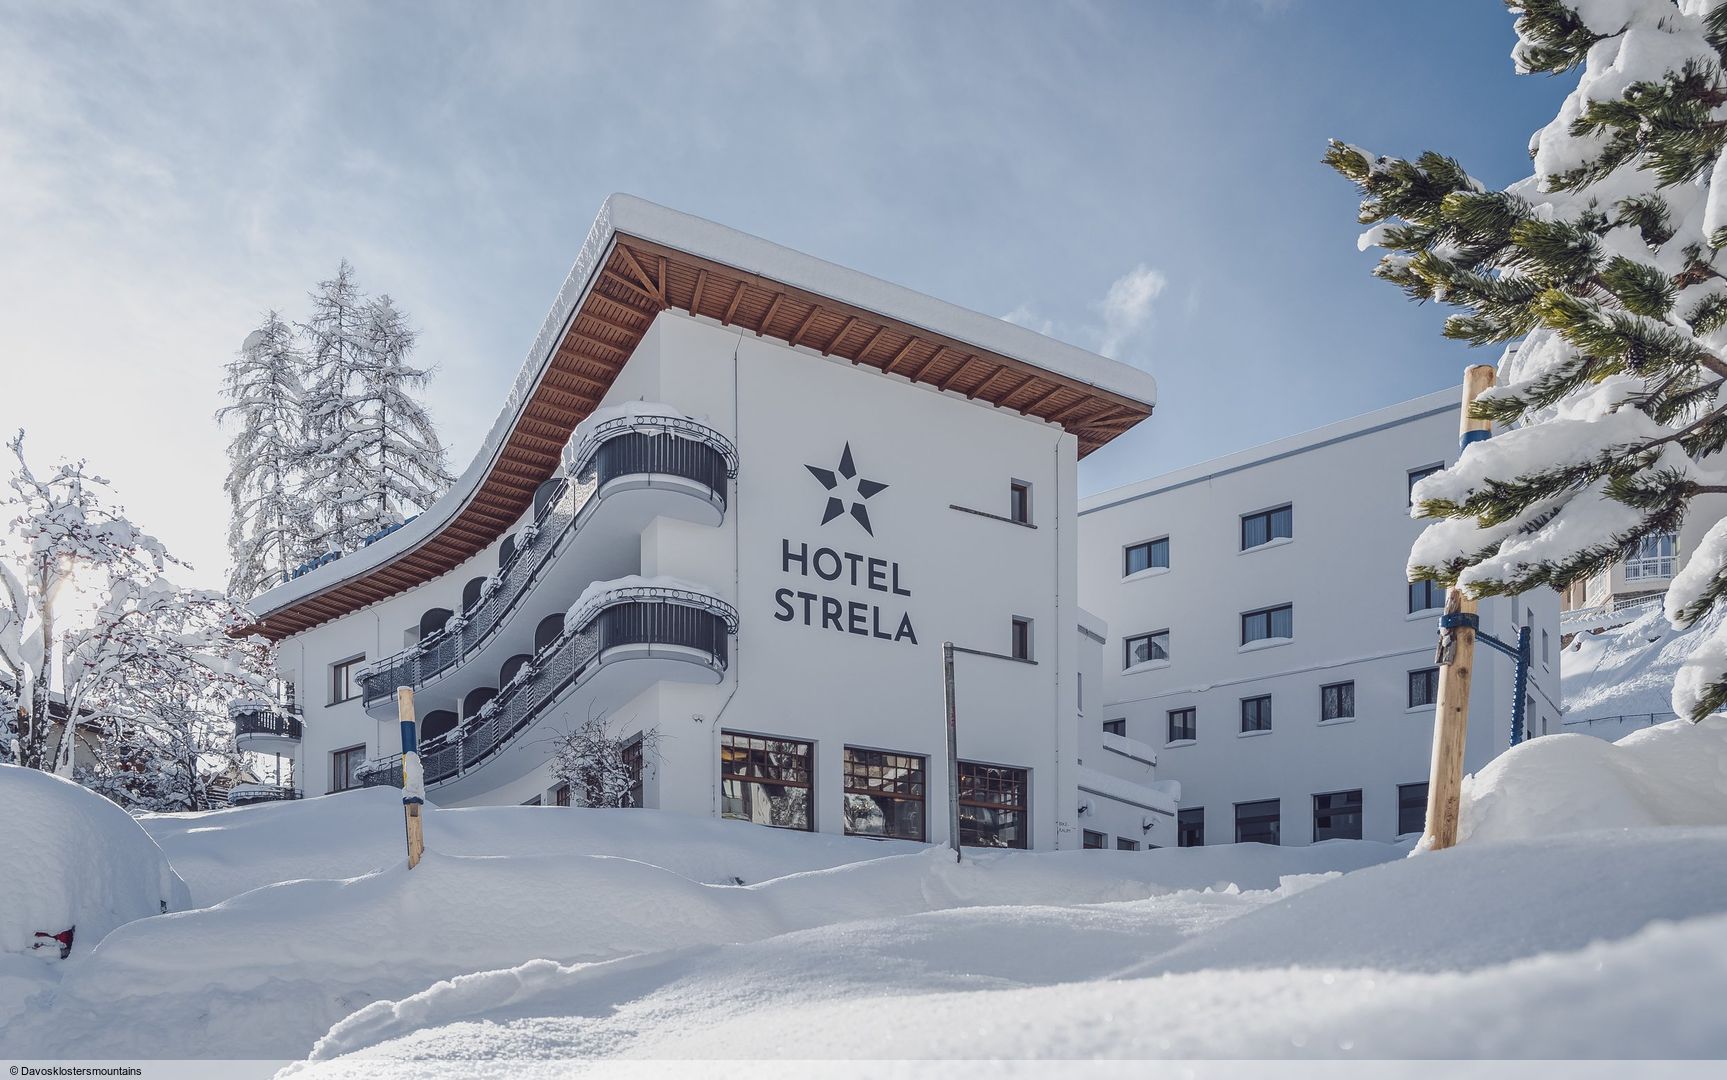 Slide1 - Hotel Strela